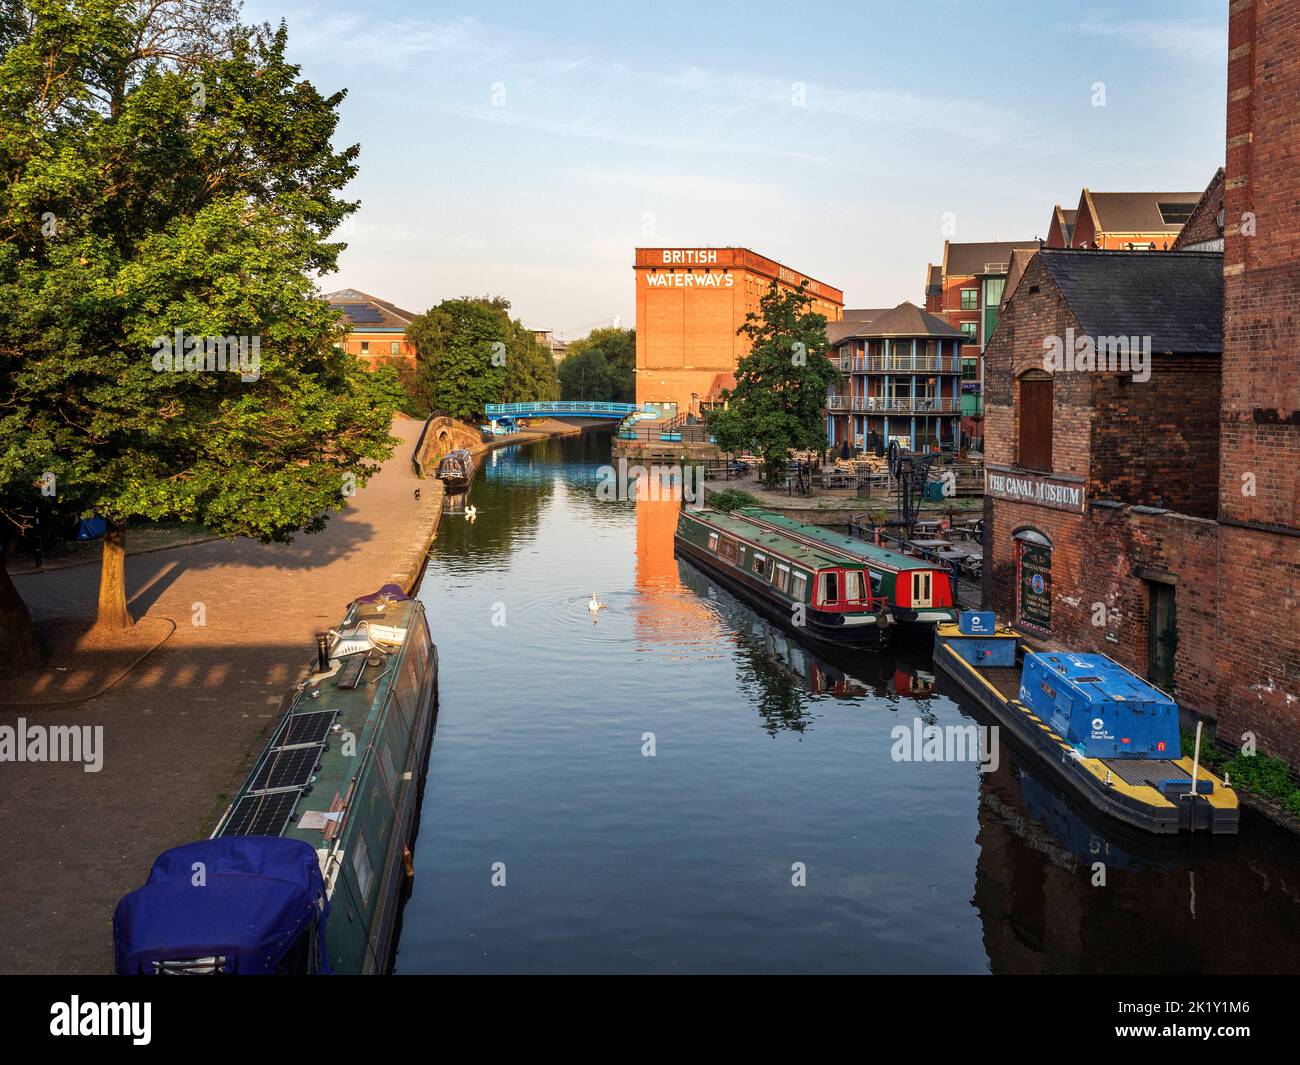 Nottingham Canal and old British Waterways building at sunrise Nottingham Nottinghamshire England Stock Photo